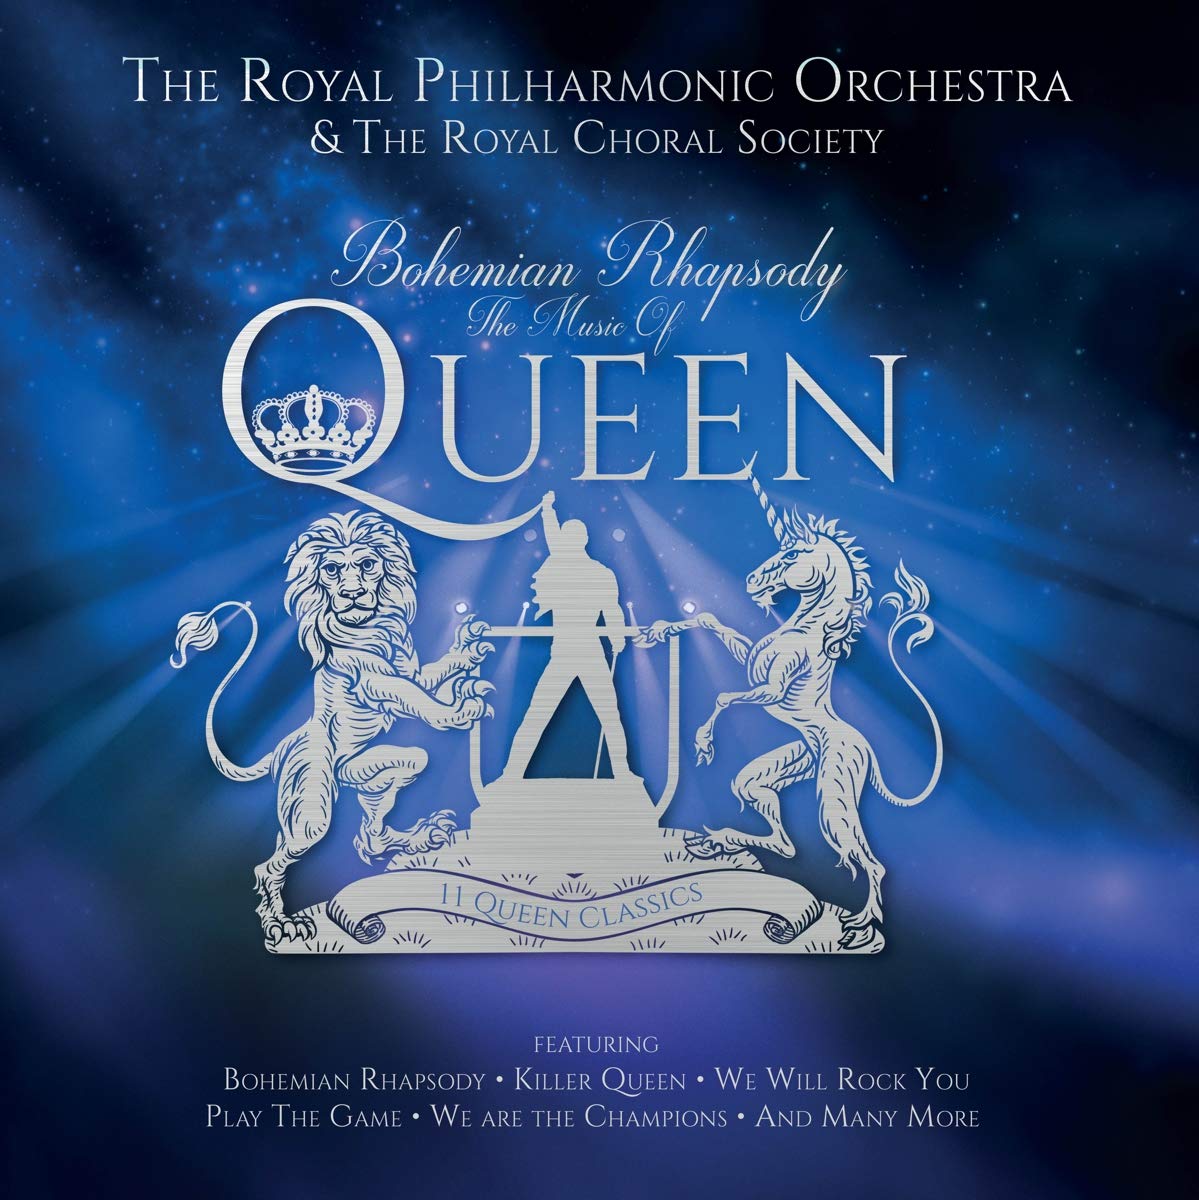 Vinile Royal Philharmonic Orchestra - Bohemian Rhapsody/The Music Of Queen NUOVO SIGILLATO, EDIZIONE DEL 29/05/2020 SUBITO DISPONIBILE